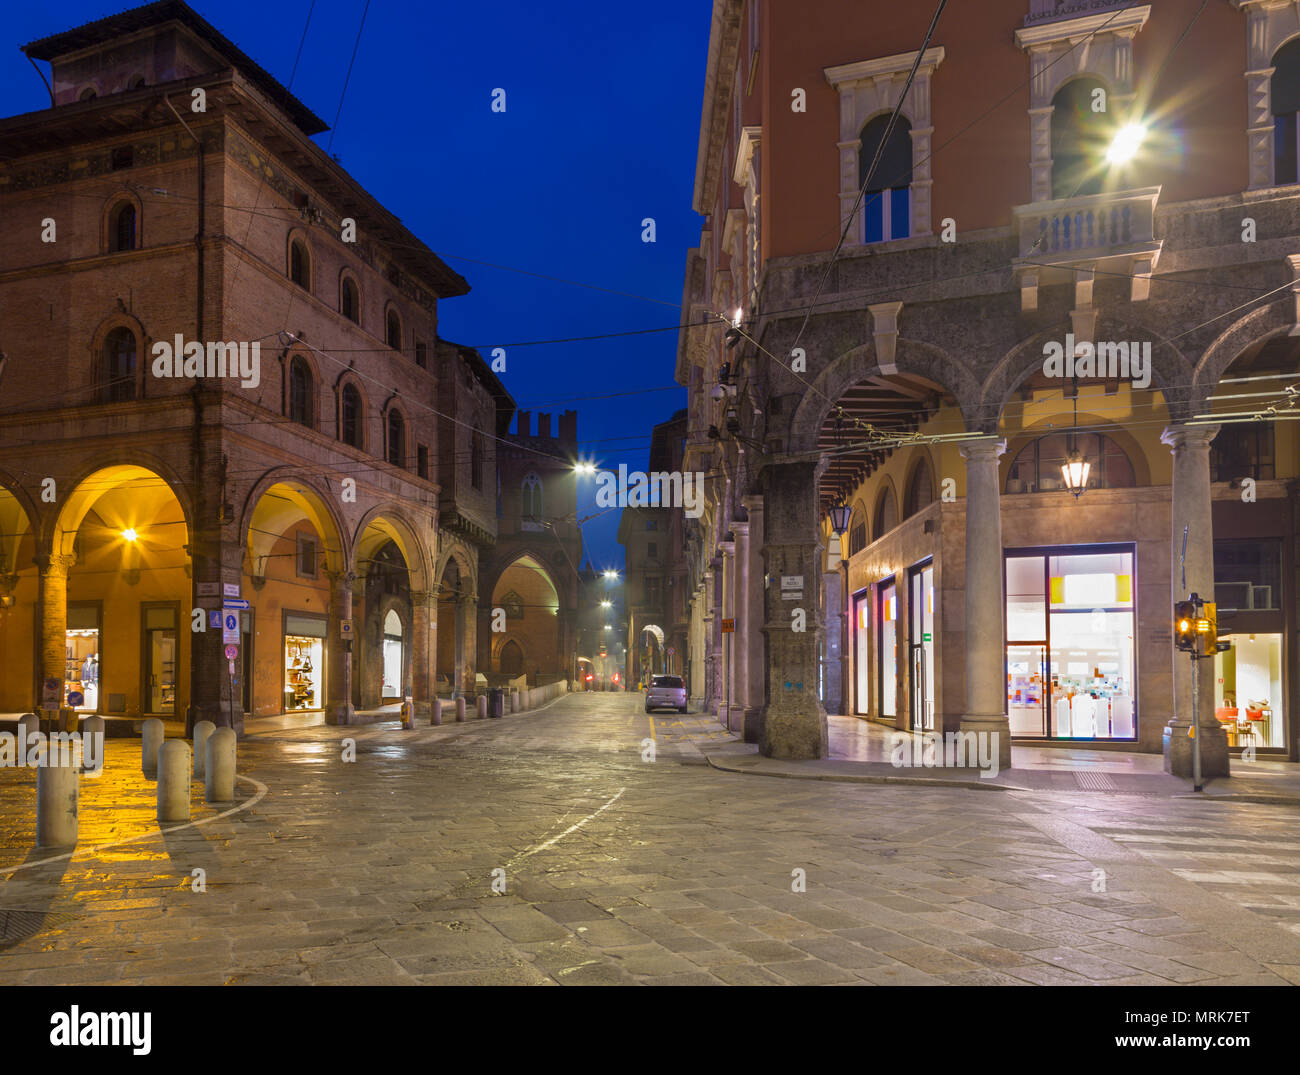 Bologna - The square Piazza della Mercanzia at dusk. Stock Photo